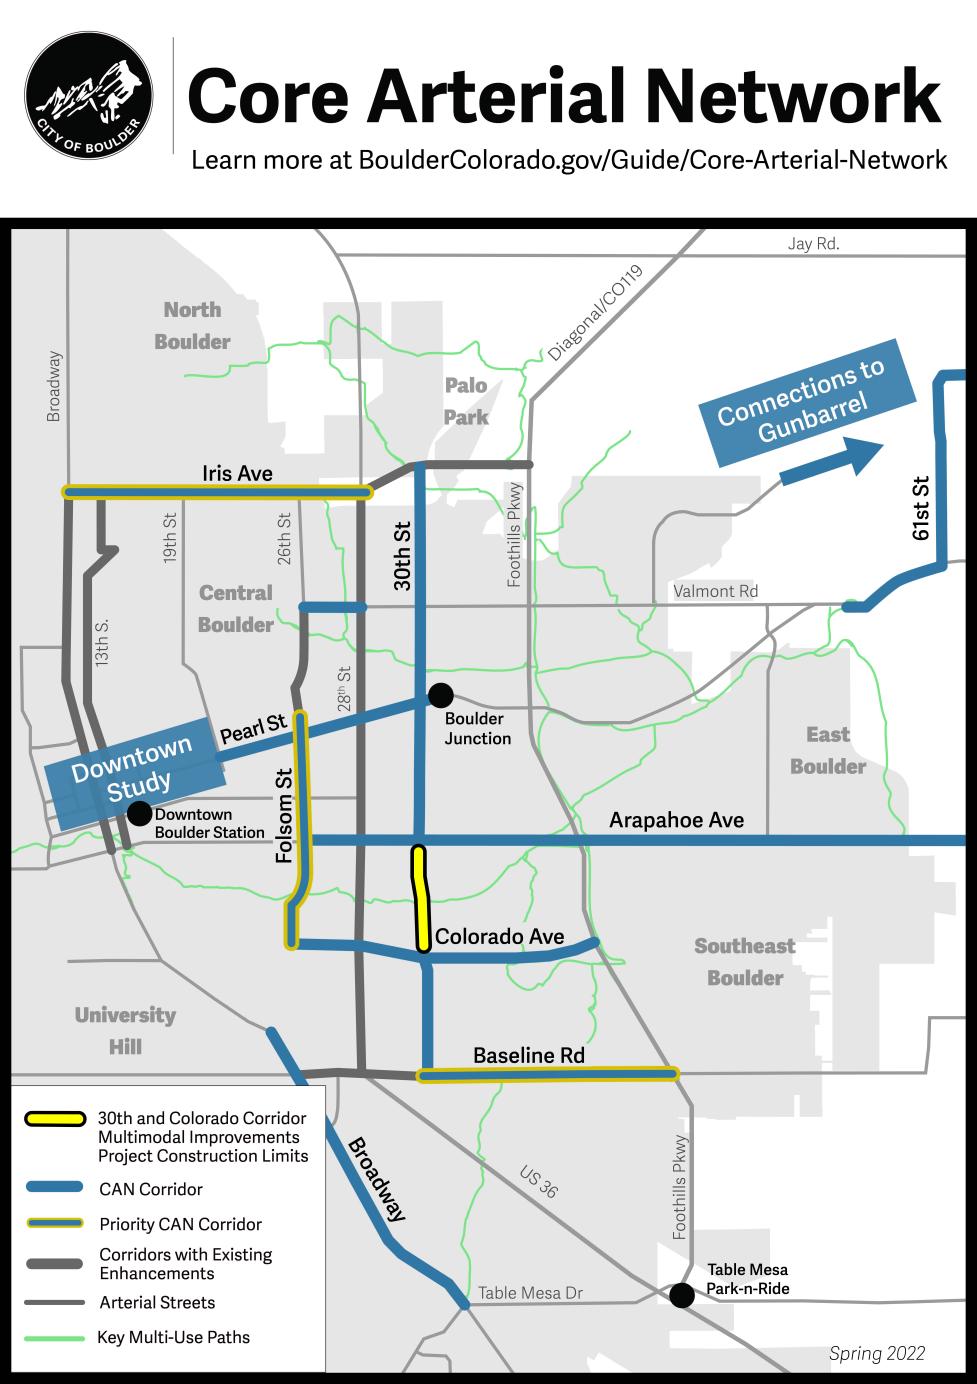 Límites del proyecto de Mejoras Multimodales del Corredor de la Calle 30 en la Red Arterial Núcleo. Se extiende sobre la calle 30 desde las avenidas Arapahoe hasta Colorado.